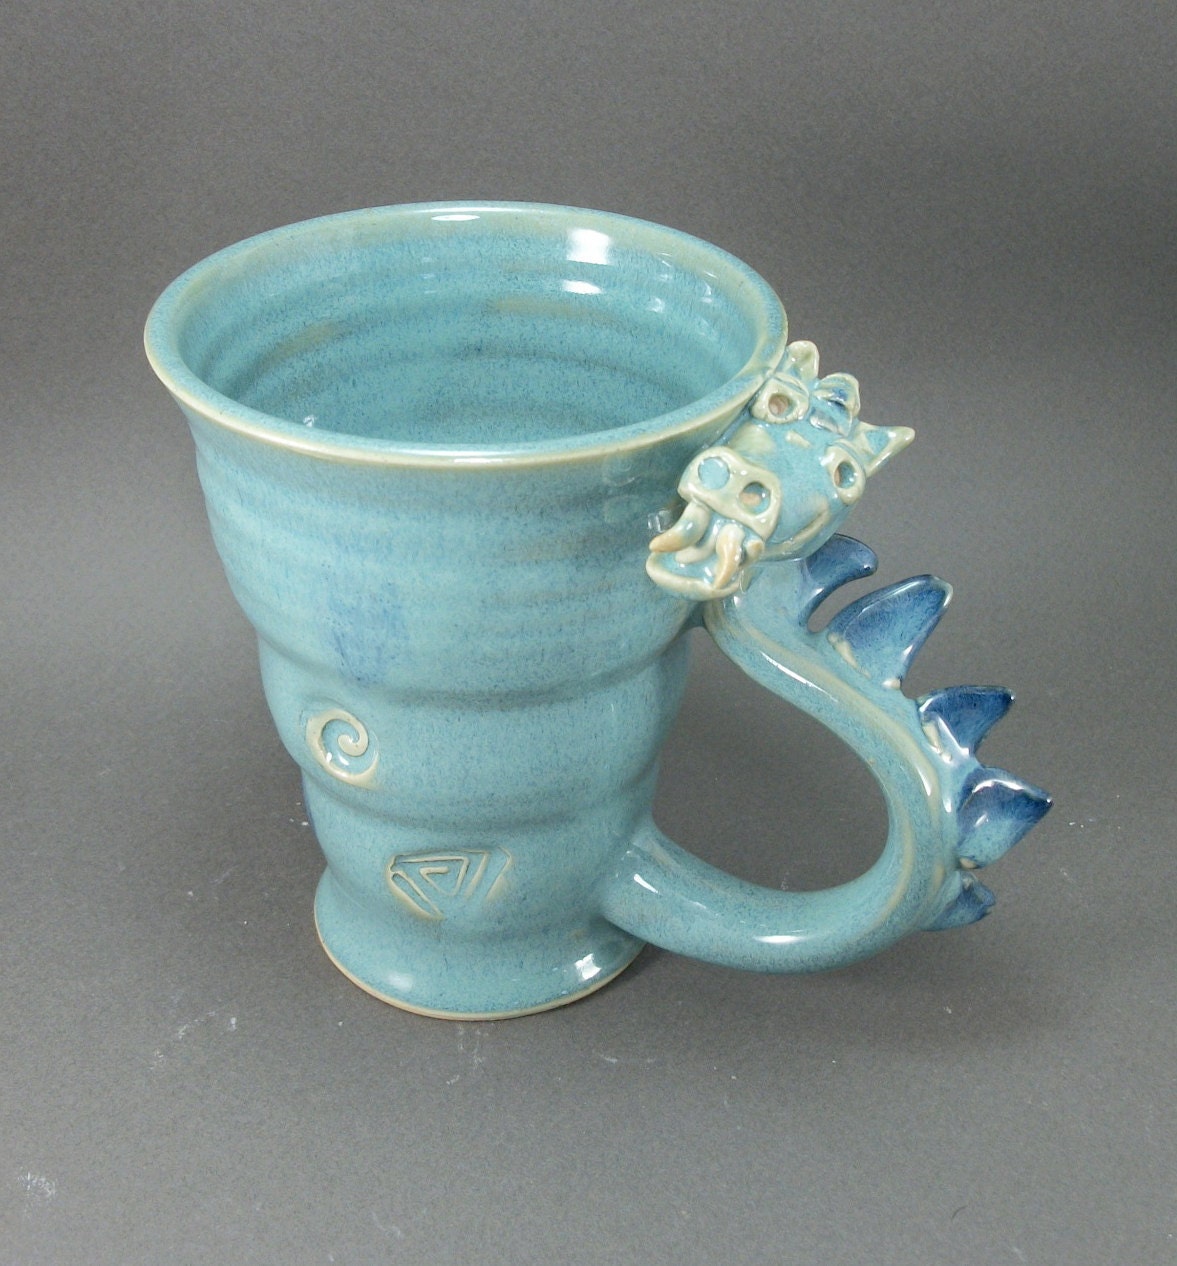 dragon mug